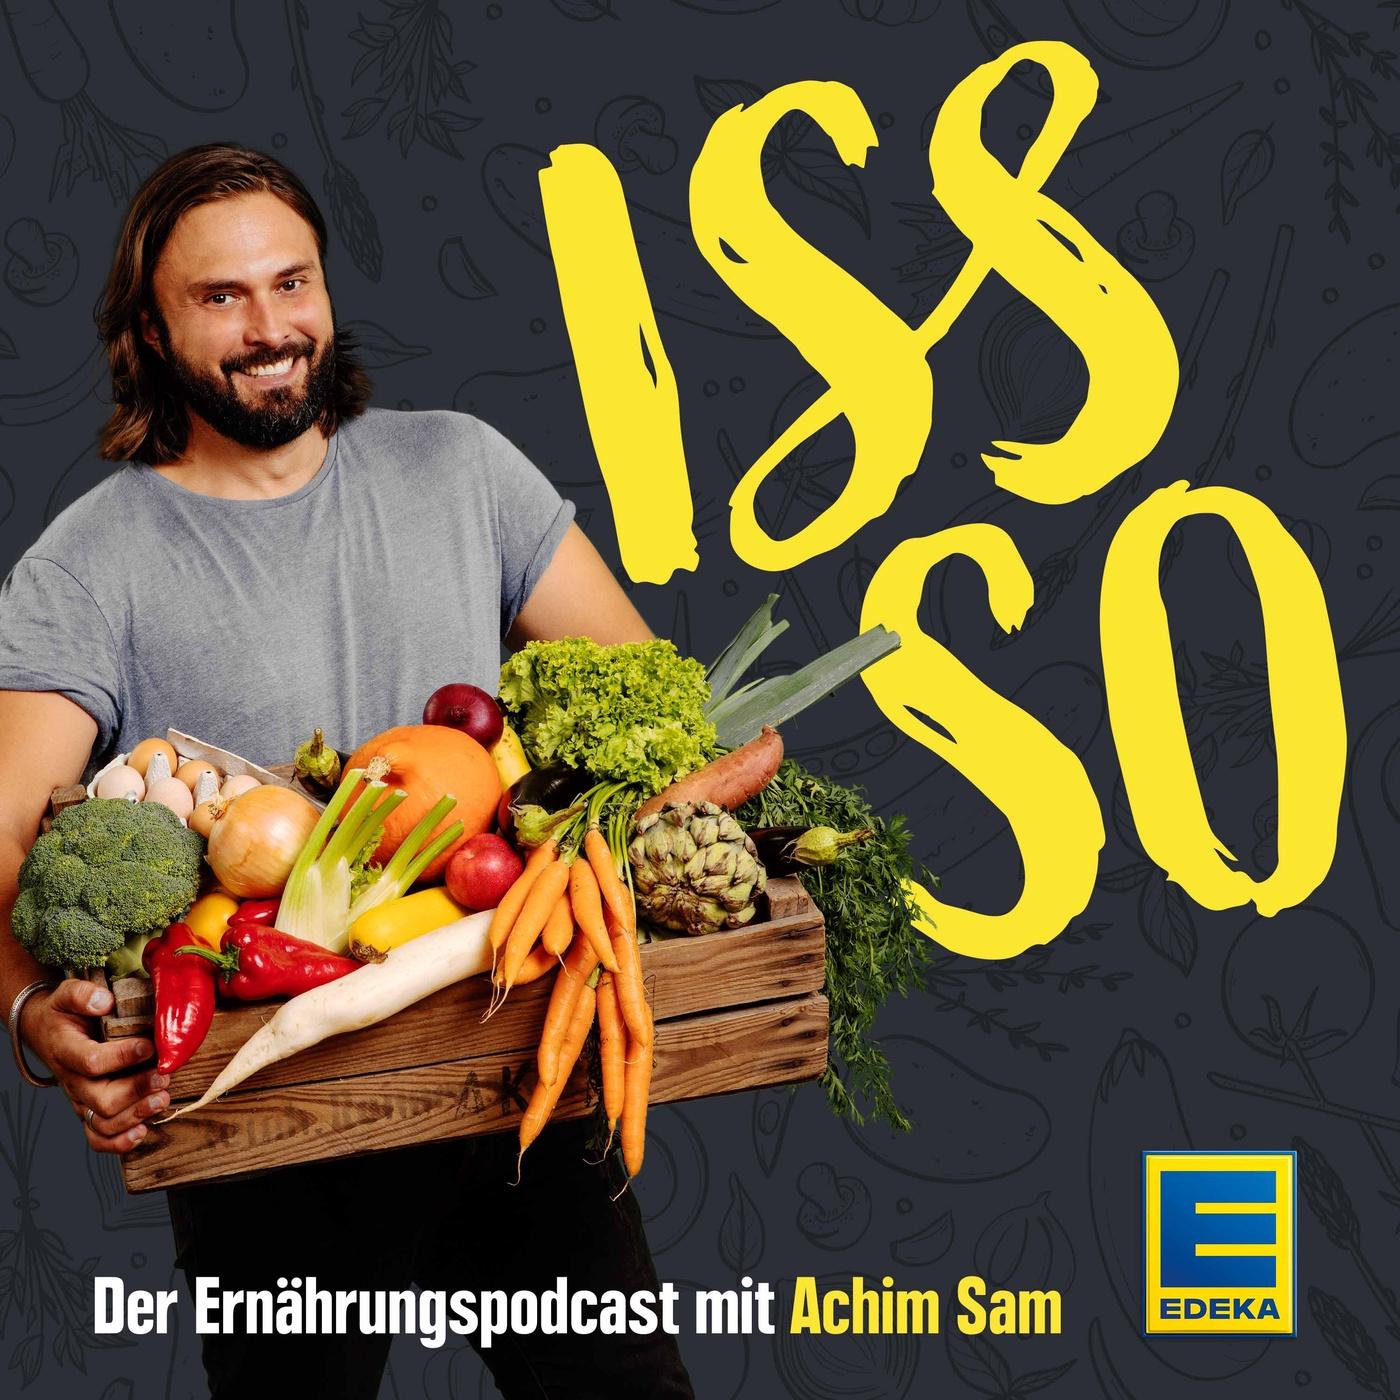 Titelbild des Podcast Iss so mit Achim Sam und einer großen Kiste voller Gemüse